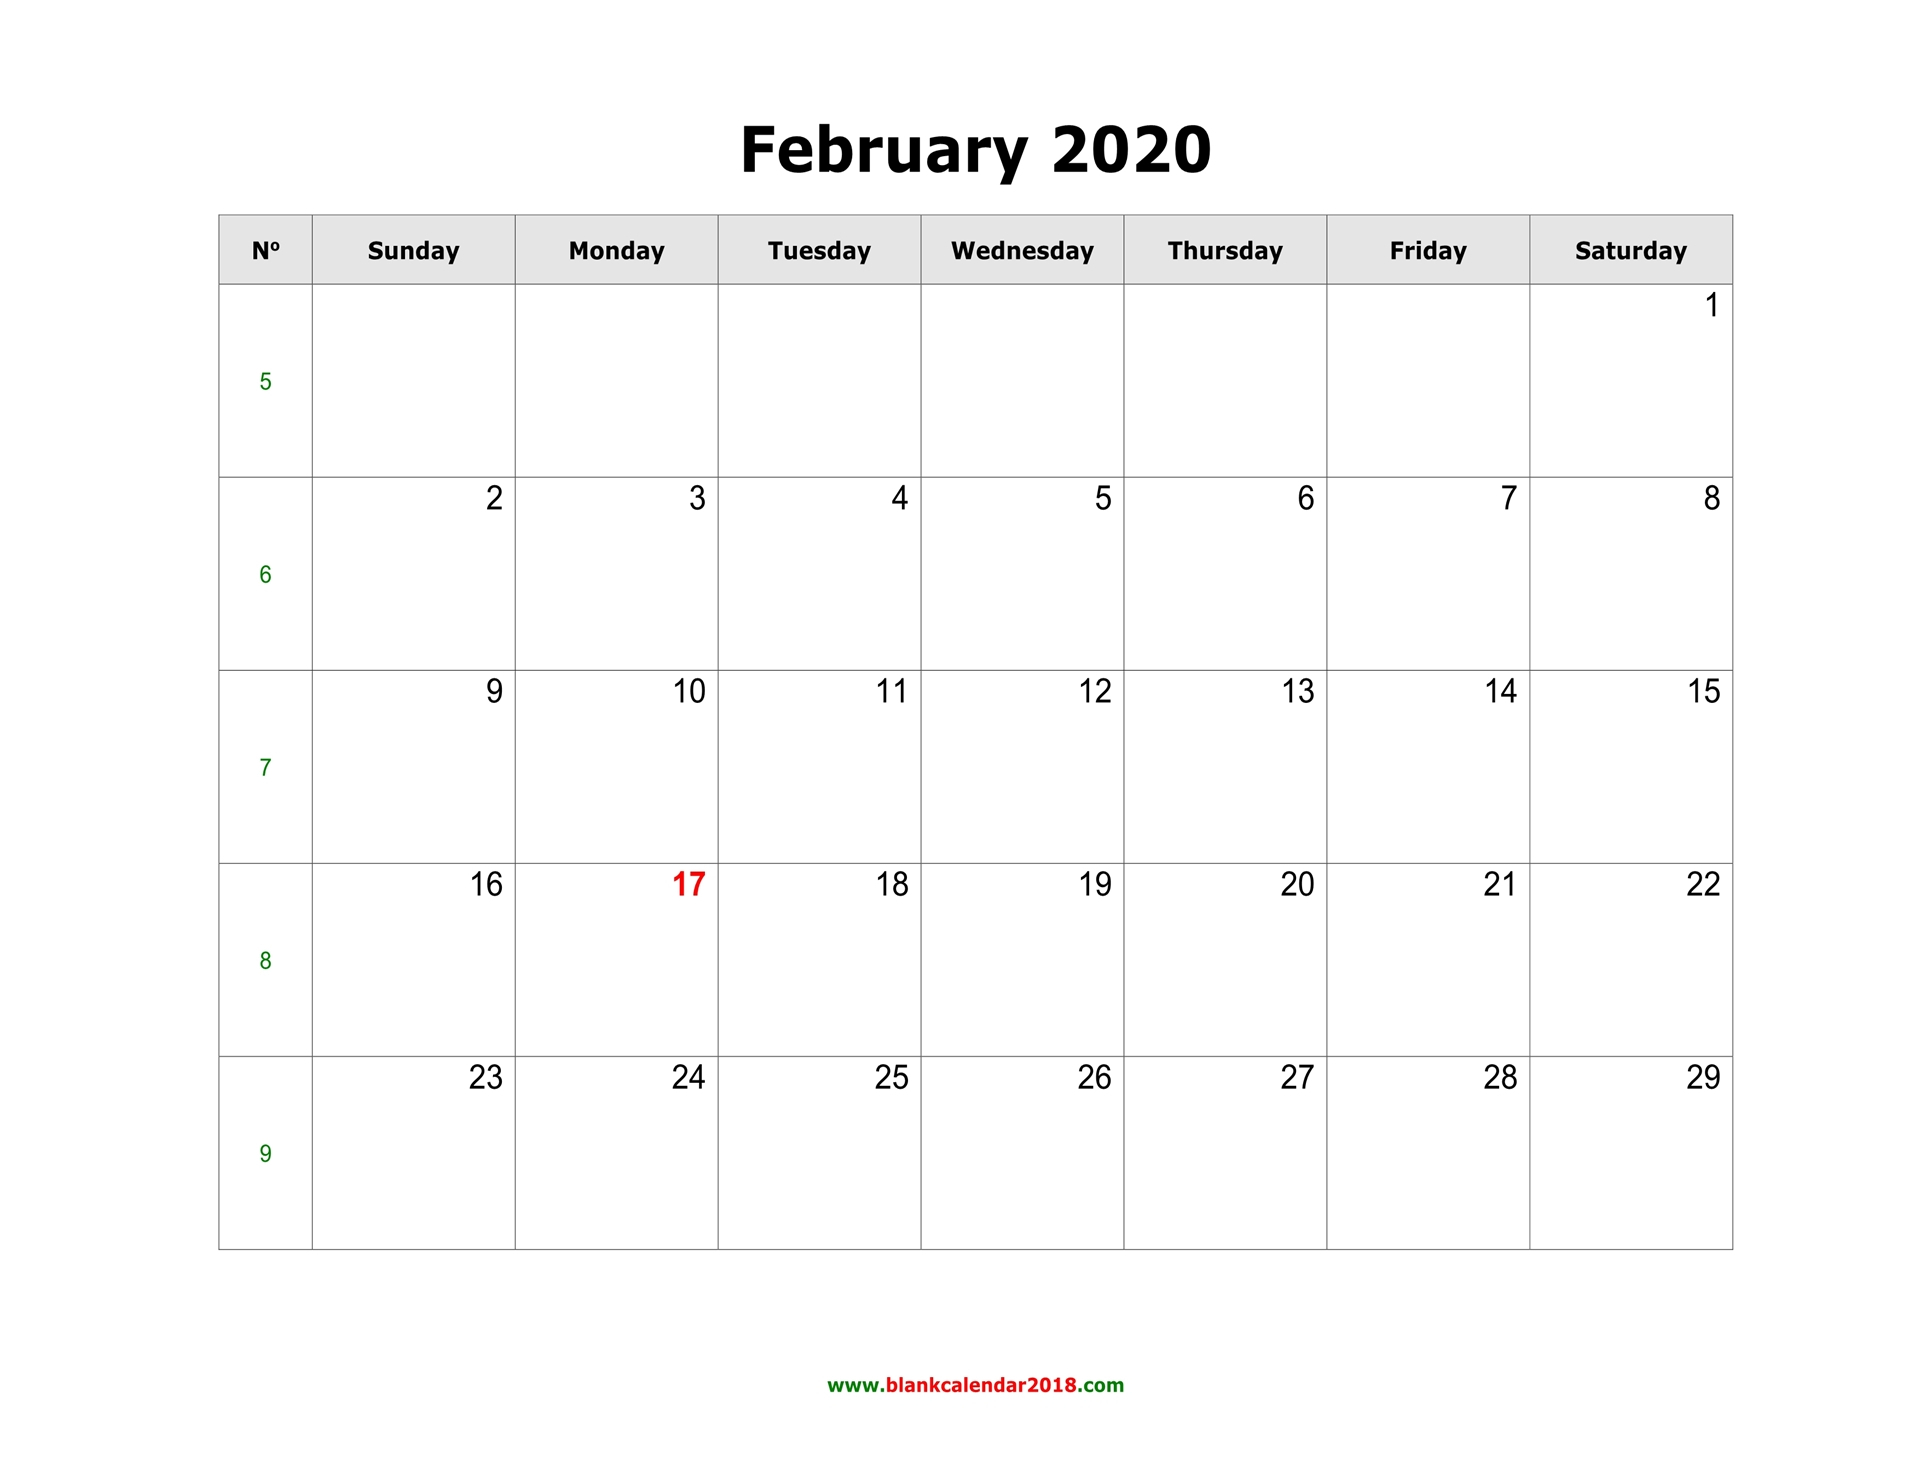 Blank Calendar For February 2020